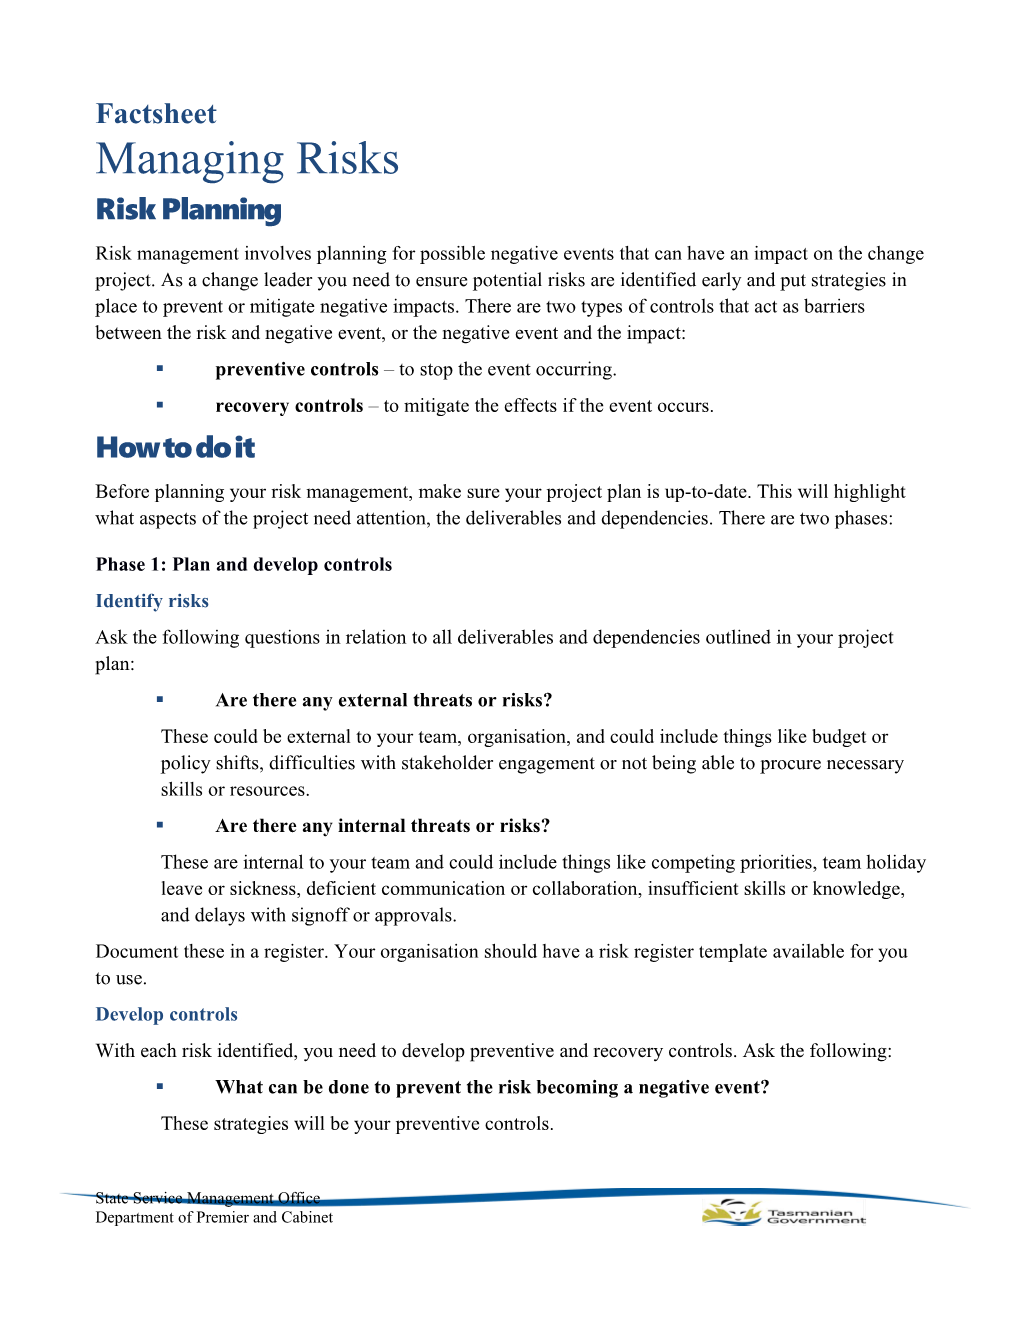 Factsheet: Managing Risks